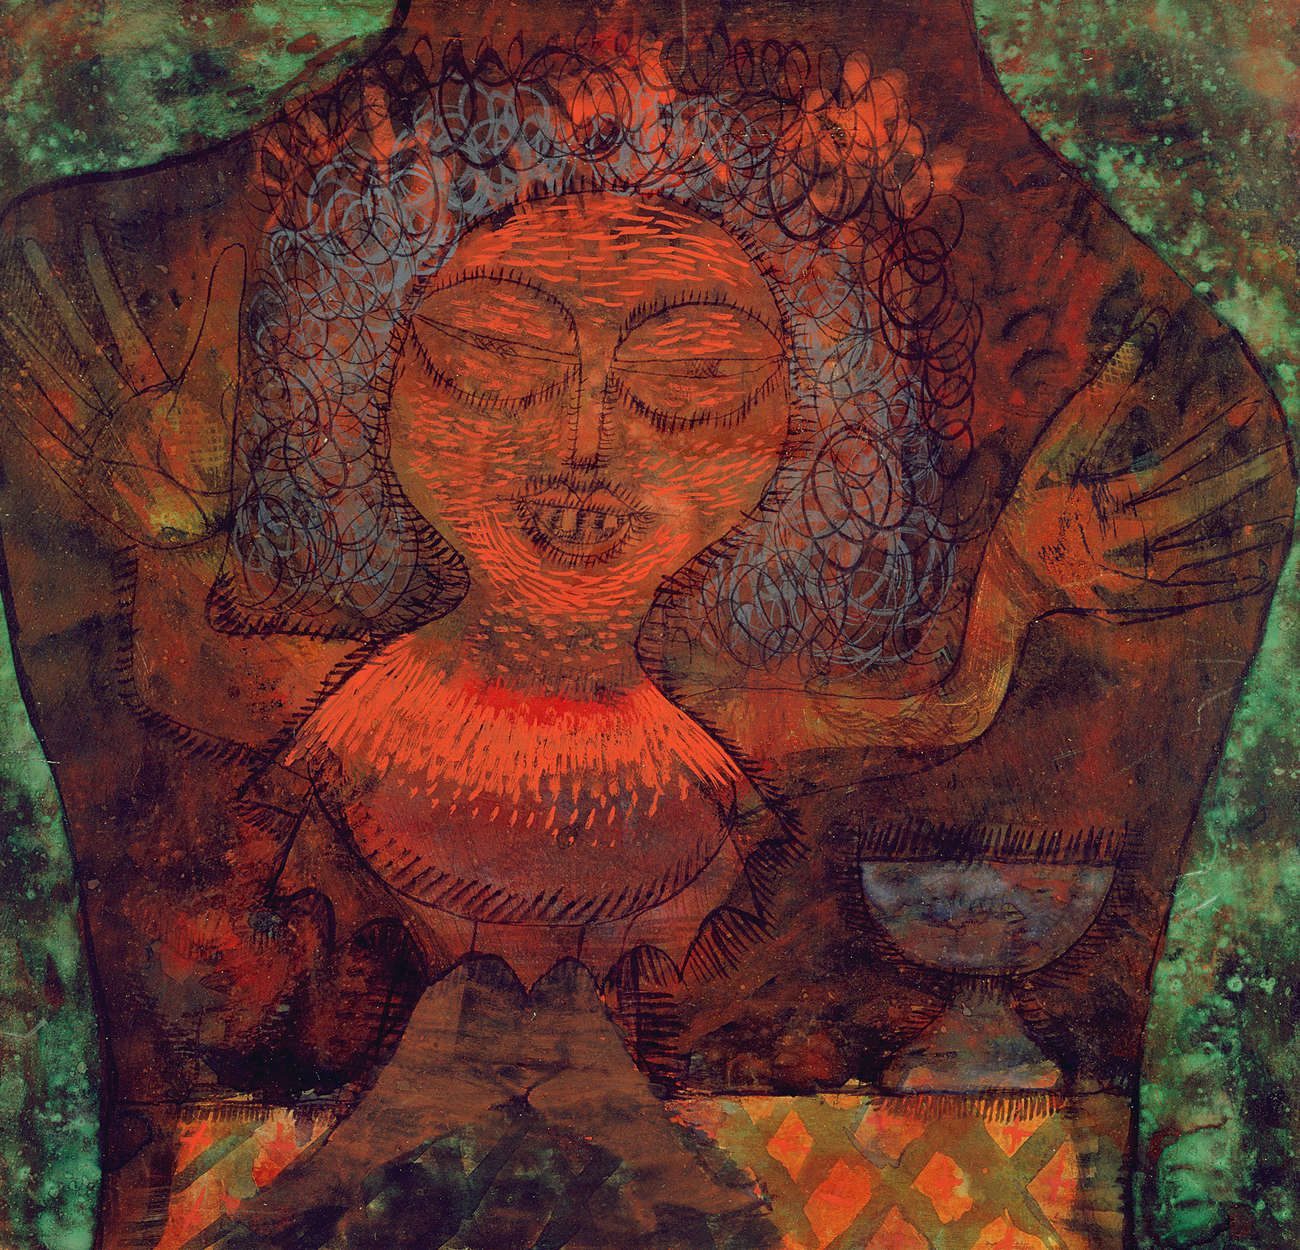             Profeet" muurschildering van Paul Klee
        